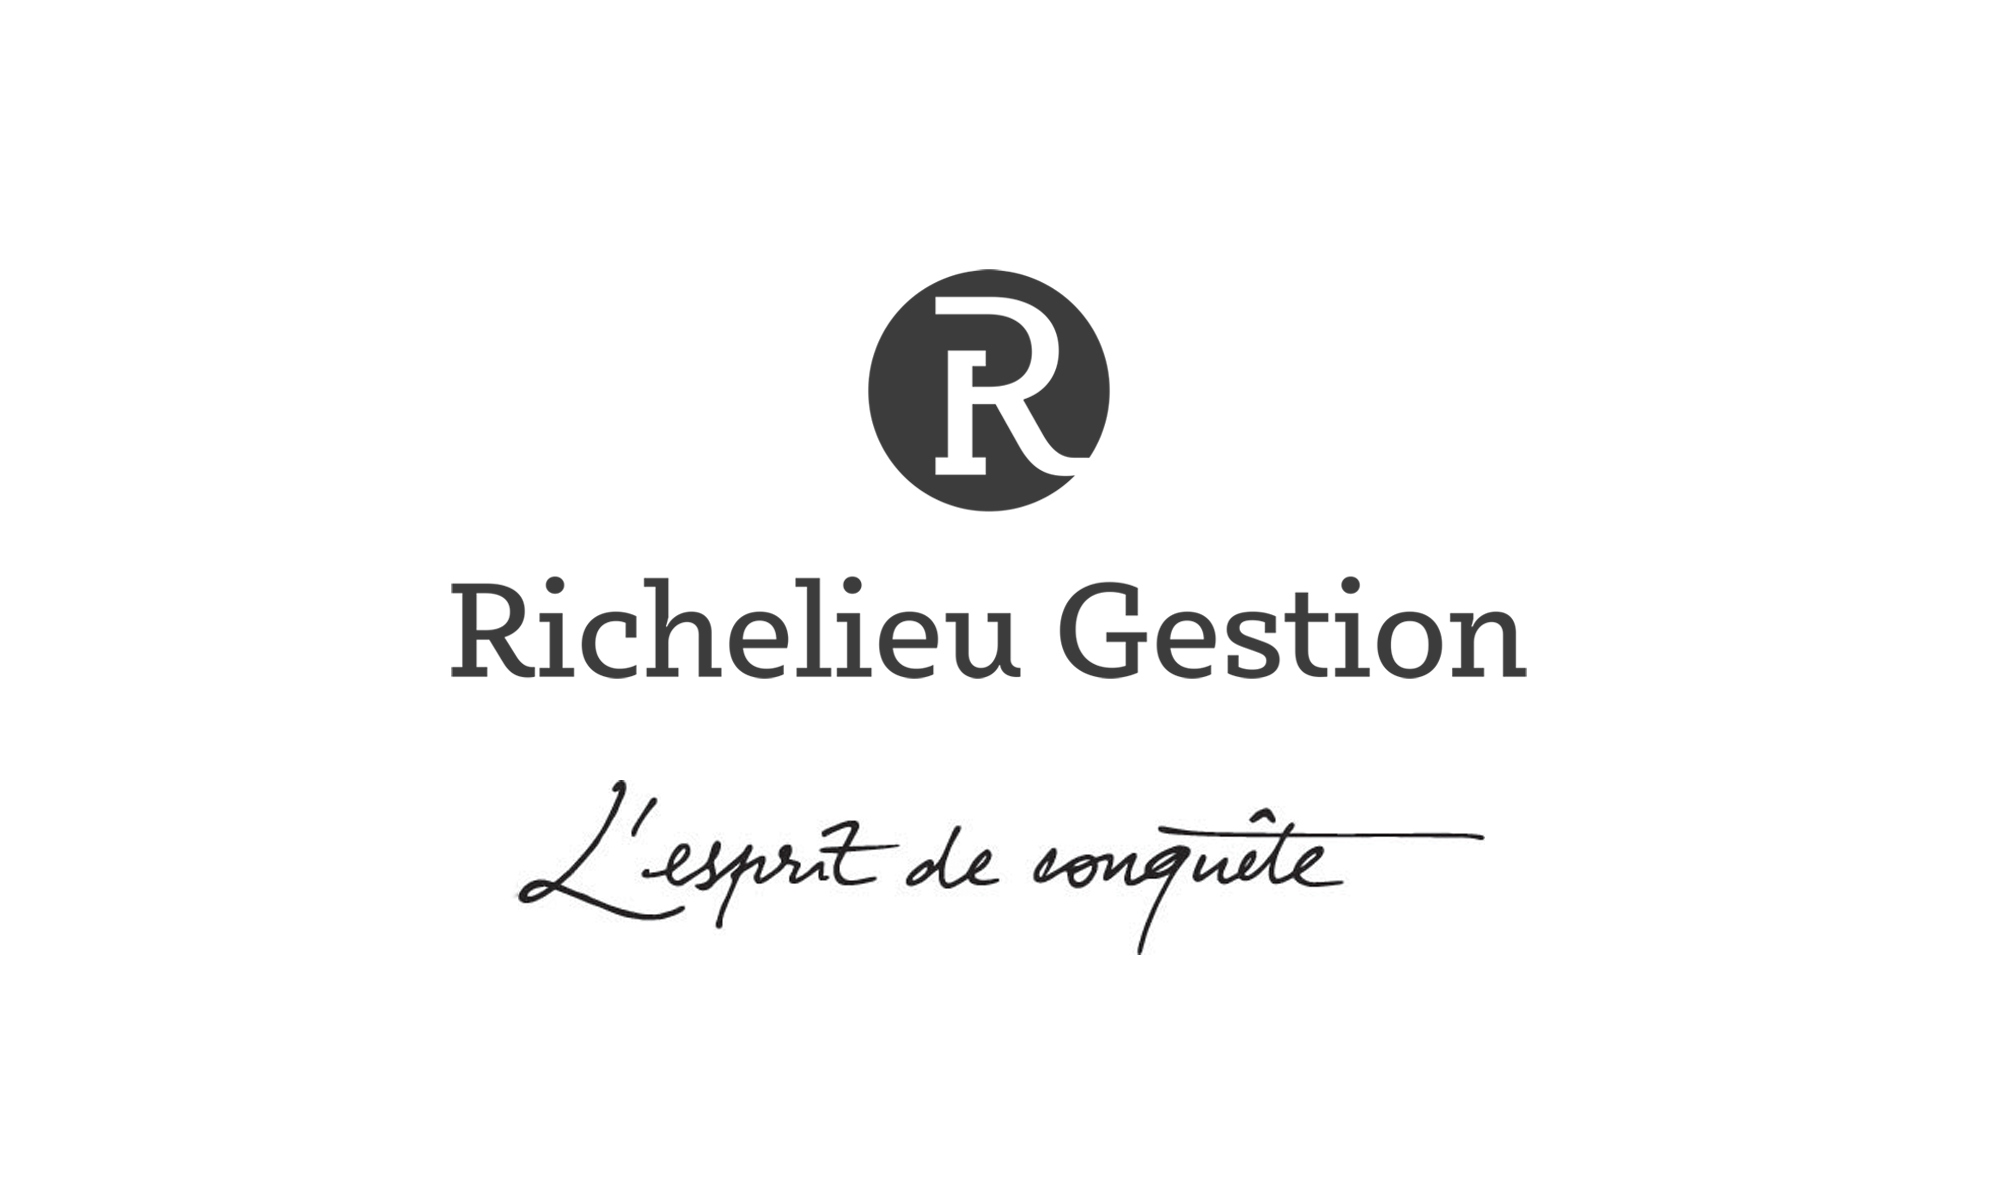 Richelieu gestion logo